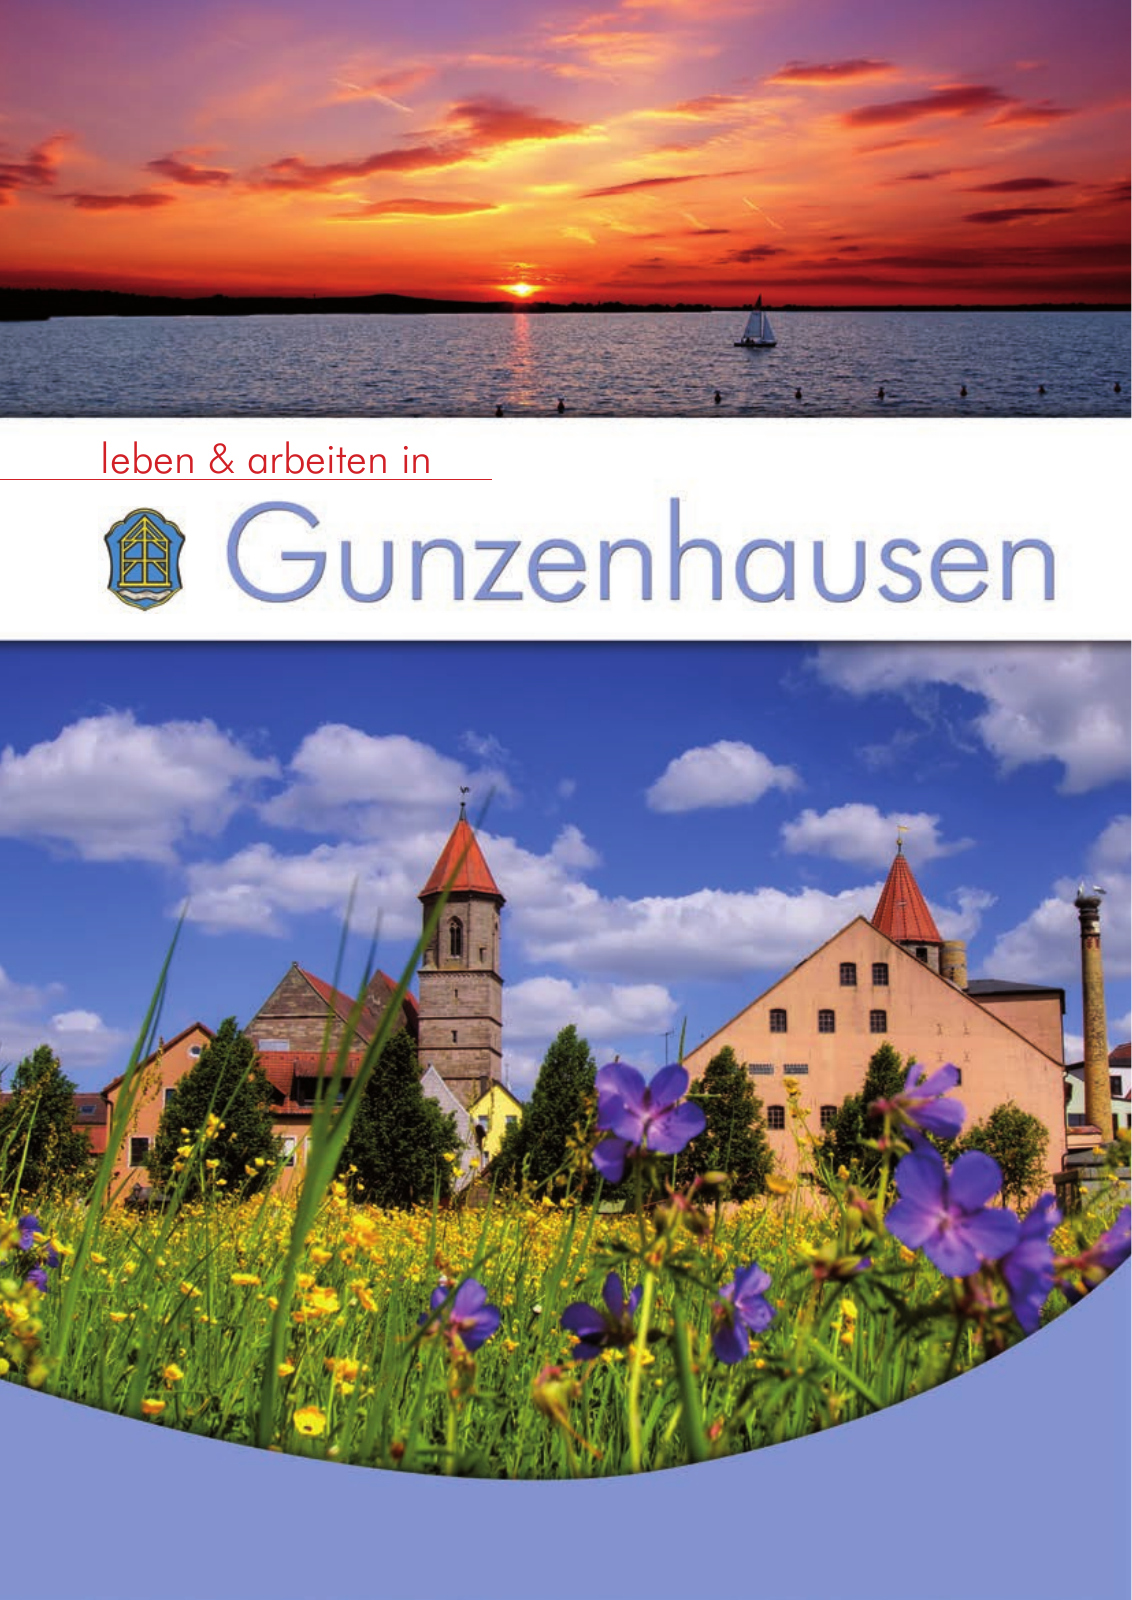 Vorschau leben & arbeiten in Gunzenhausen - 2015 Seite 1